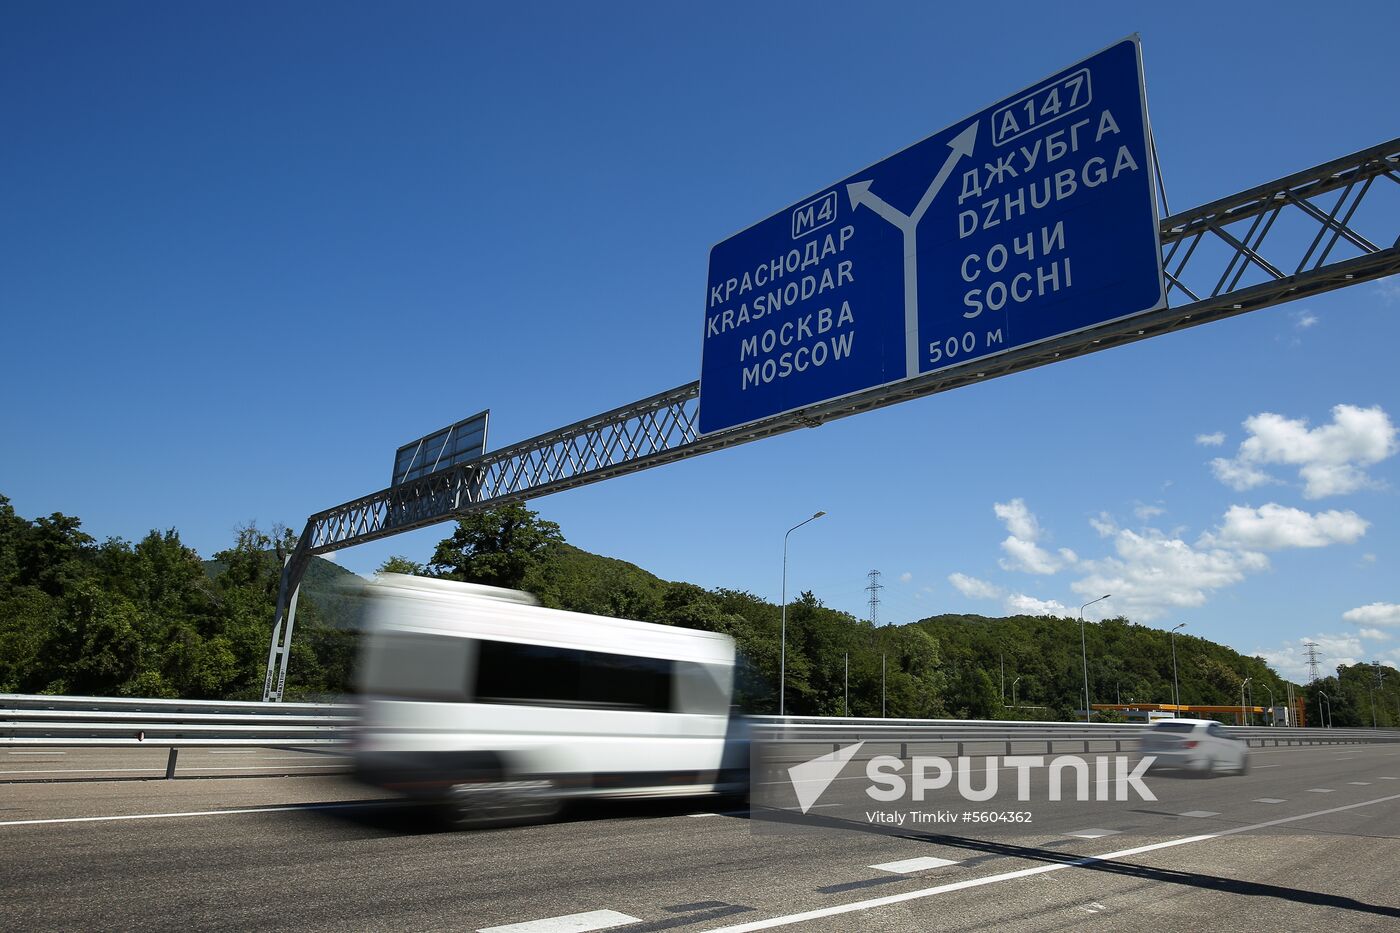 Dzhubga-Sochi highway